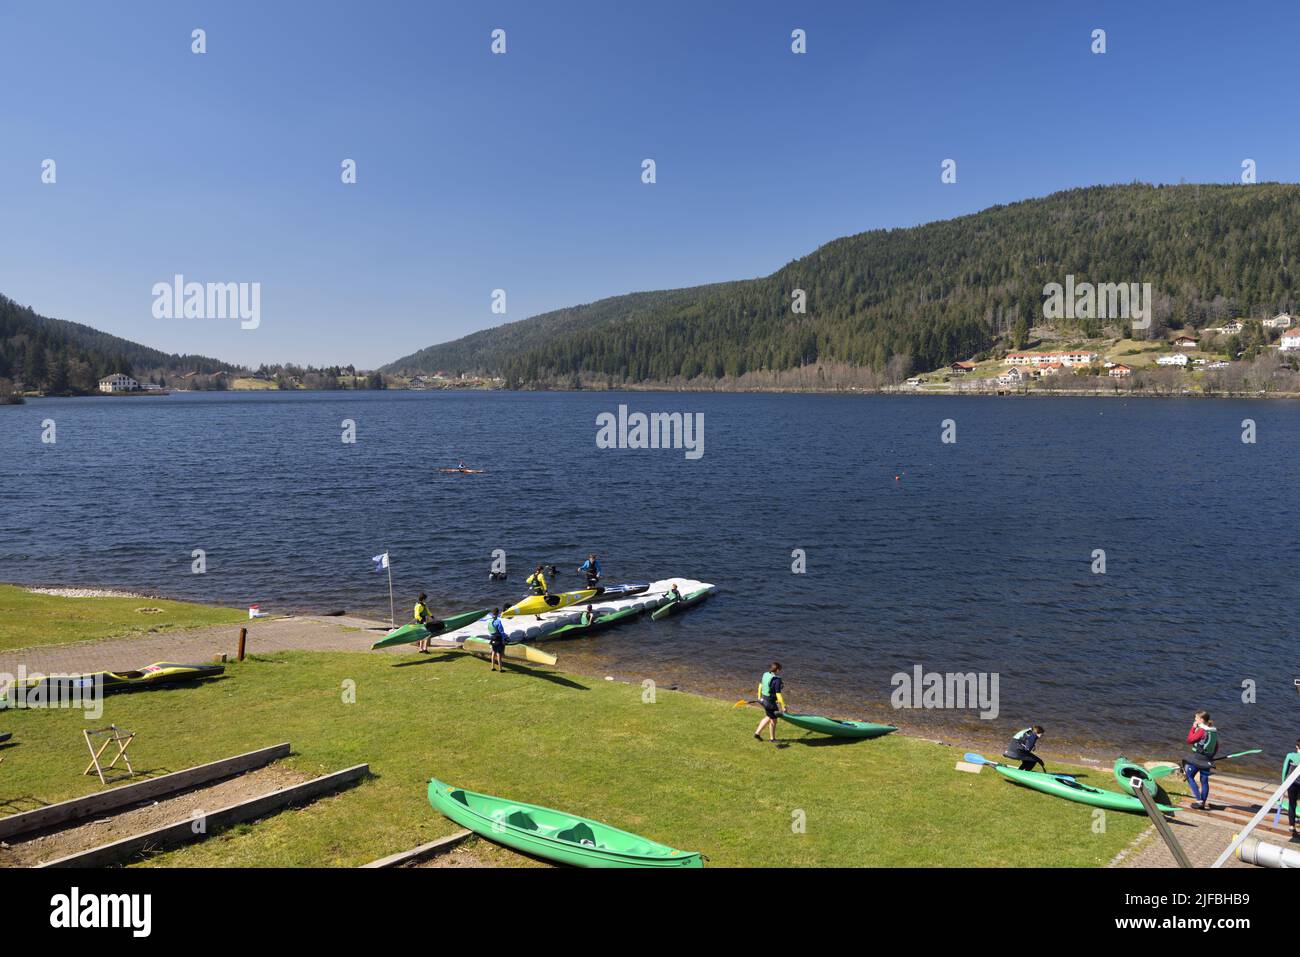 France, Vosges, Gérardmer, view of Lake Gérardmer, water sports and kayaking on Lake Gérardmer Stock Photo